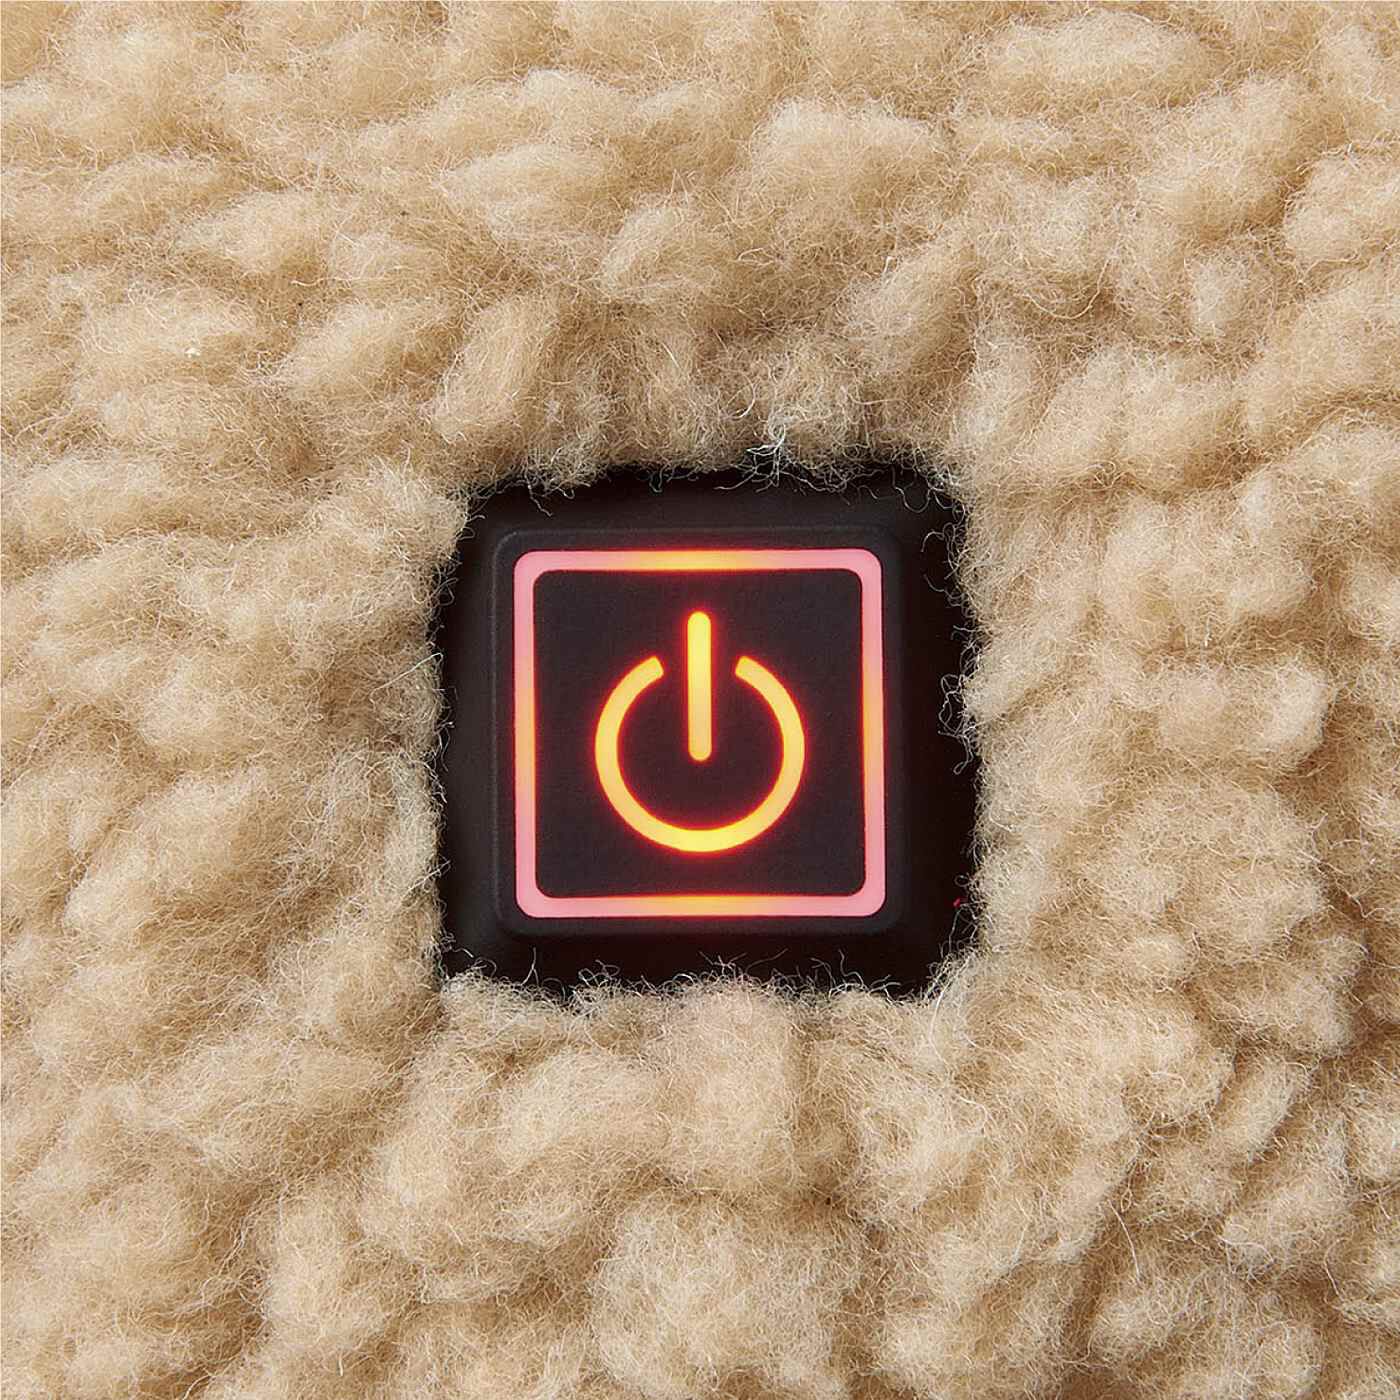 L'AMIPLUS|ラミプリュス　USBで繋ぐだけ　おしりも足先もぬっくぬく　ソクホカクッション|電源を長押しでONにすると赤色に光ります。